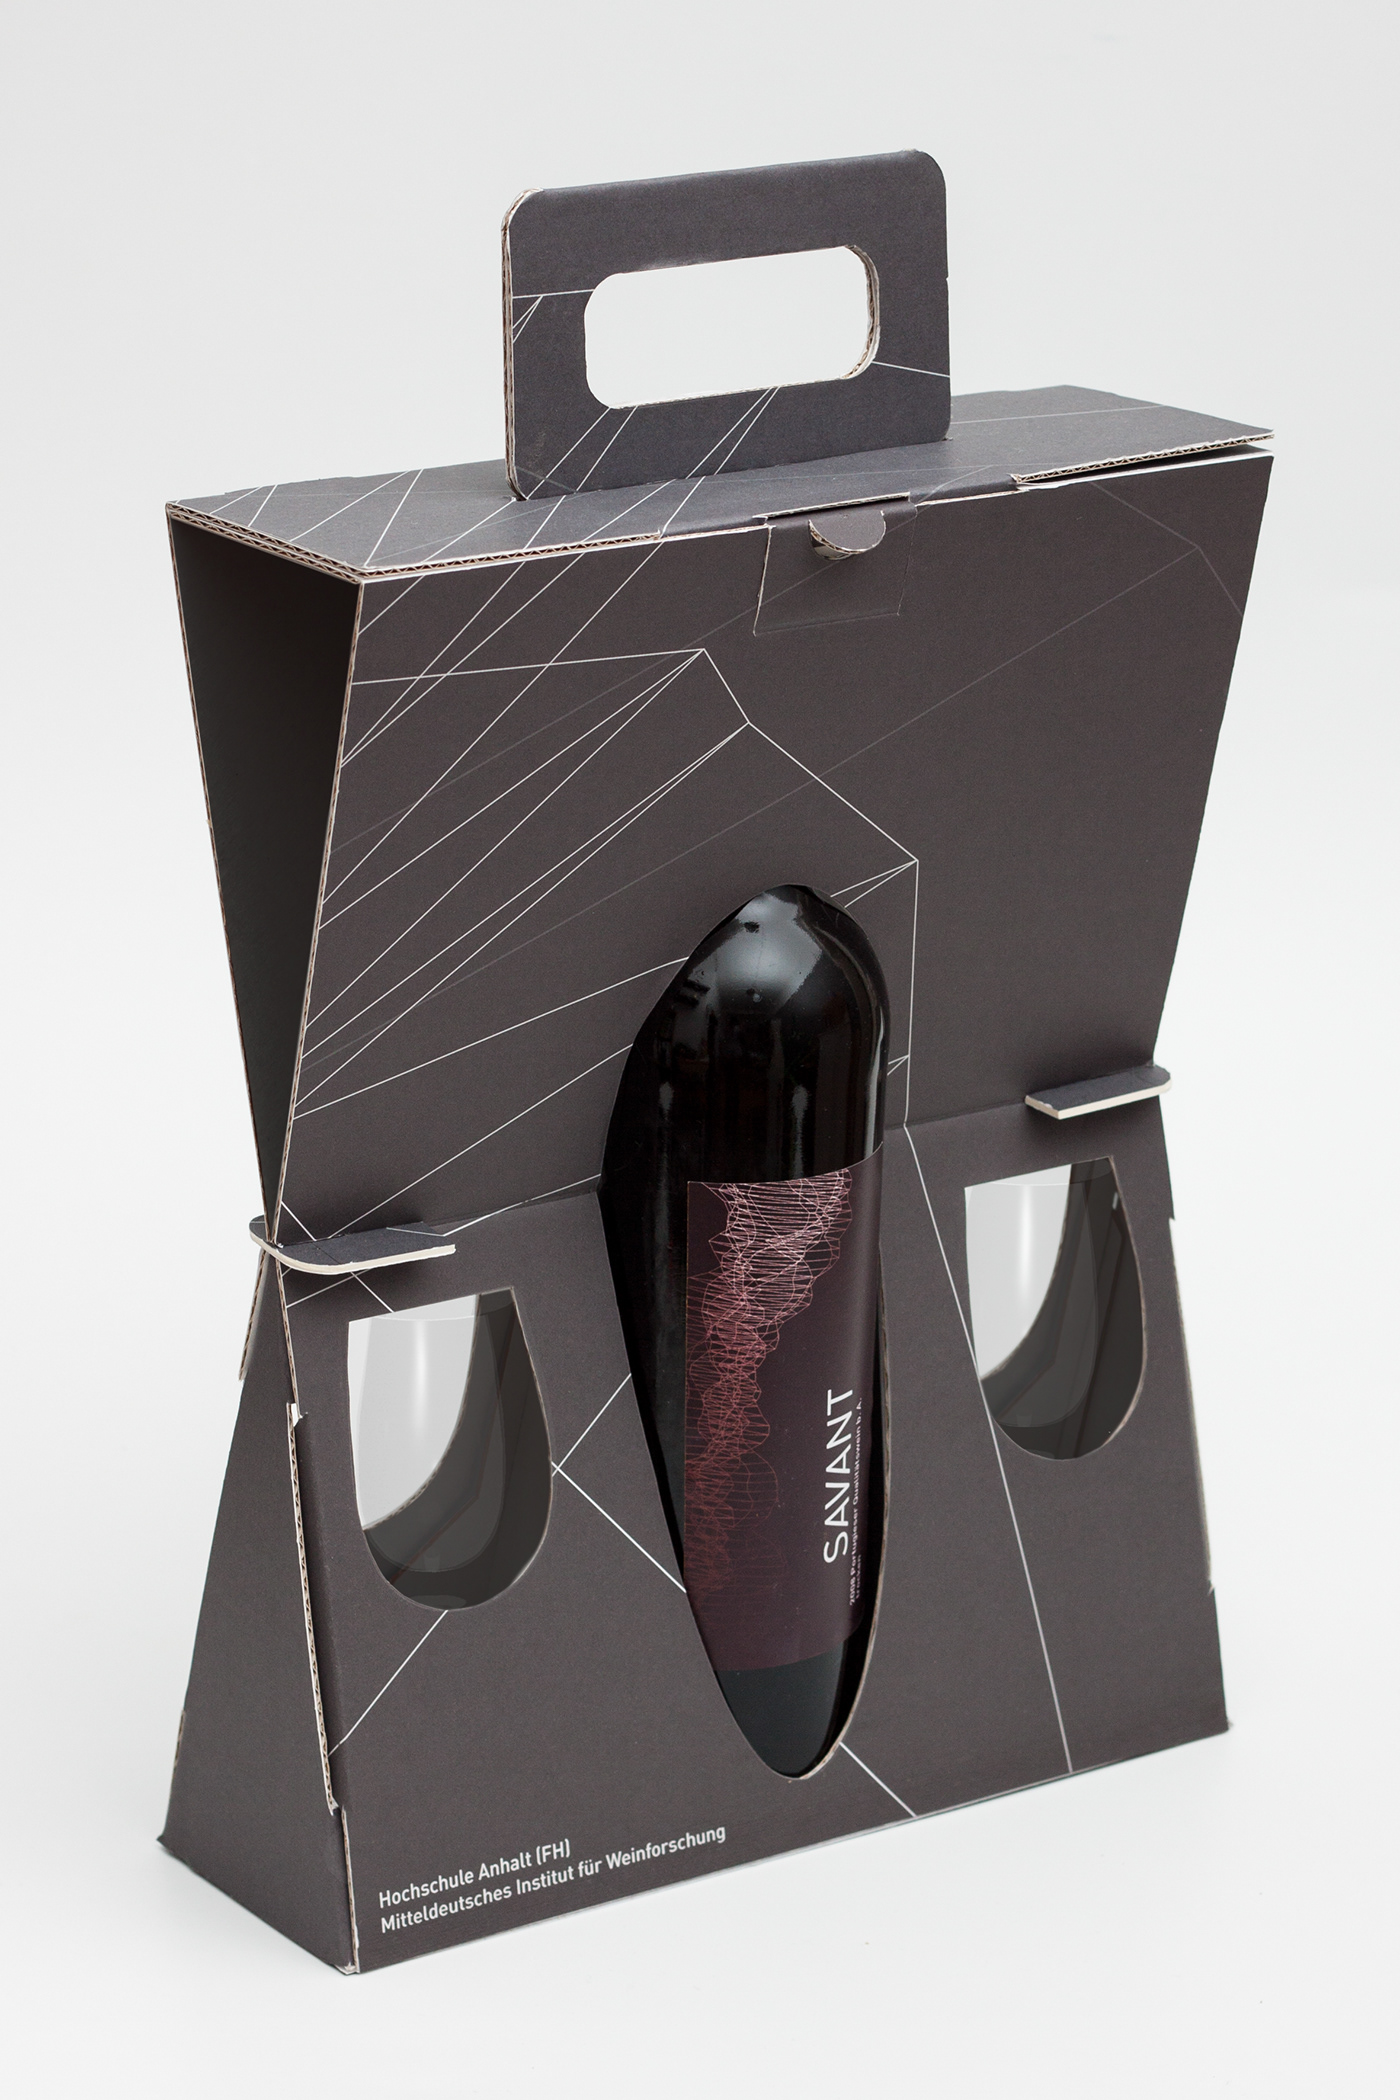 packaging design Label grafik wine Hs Anhalt Foldable papercraft